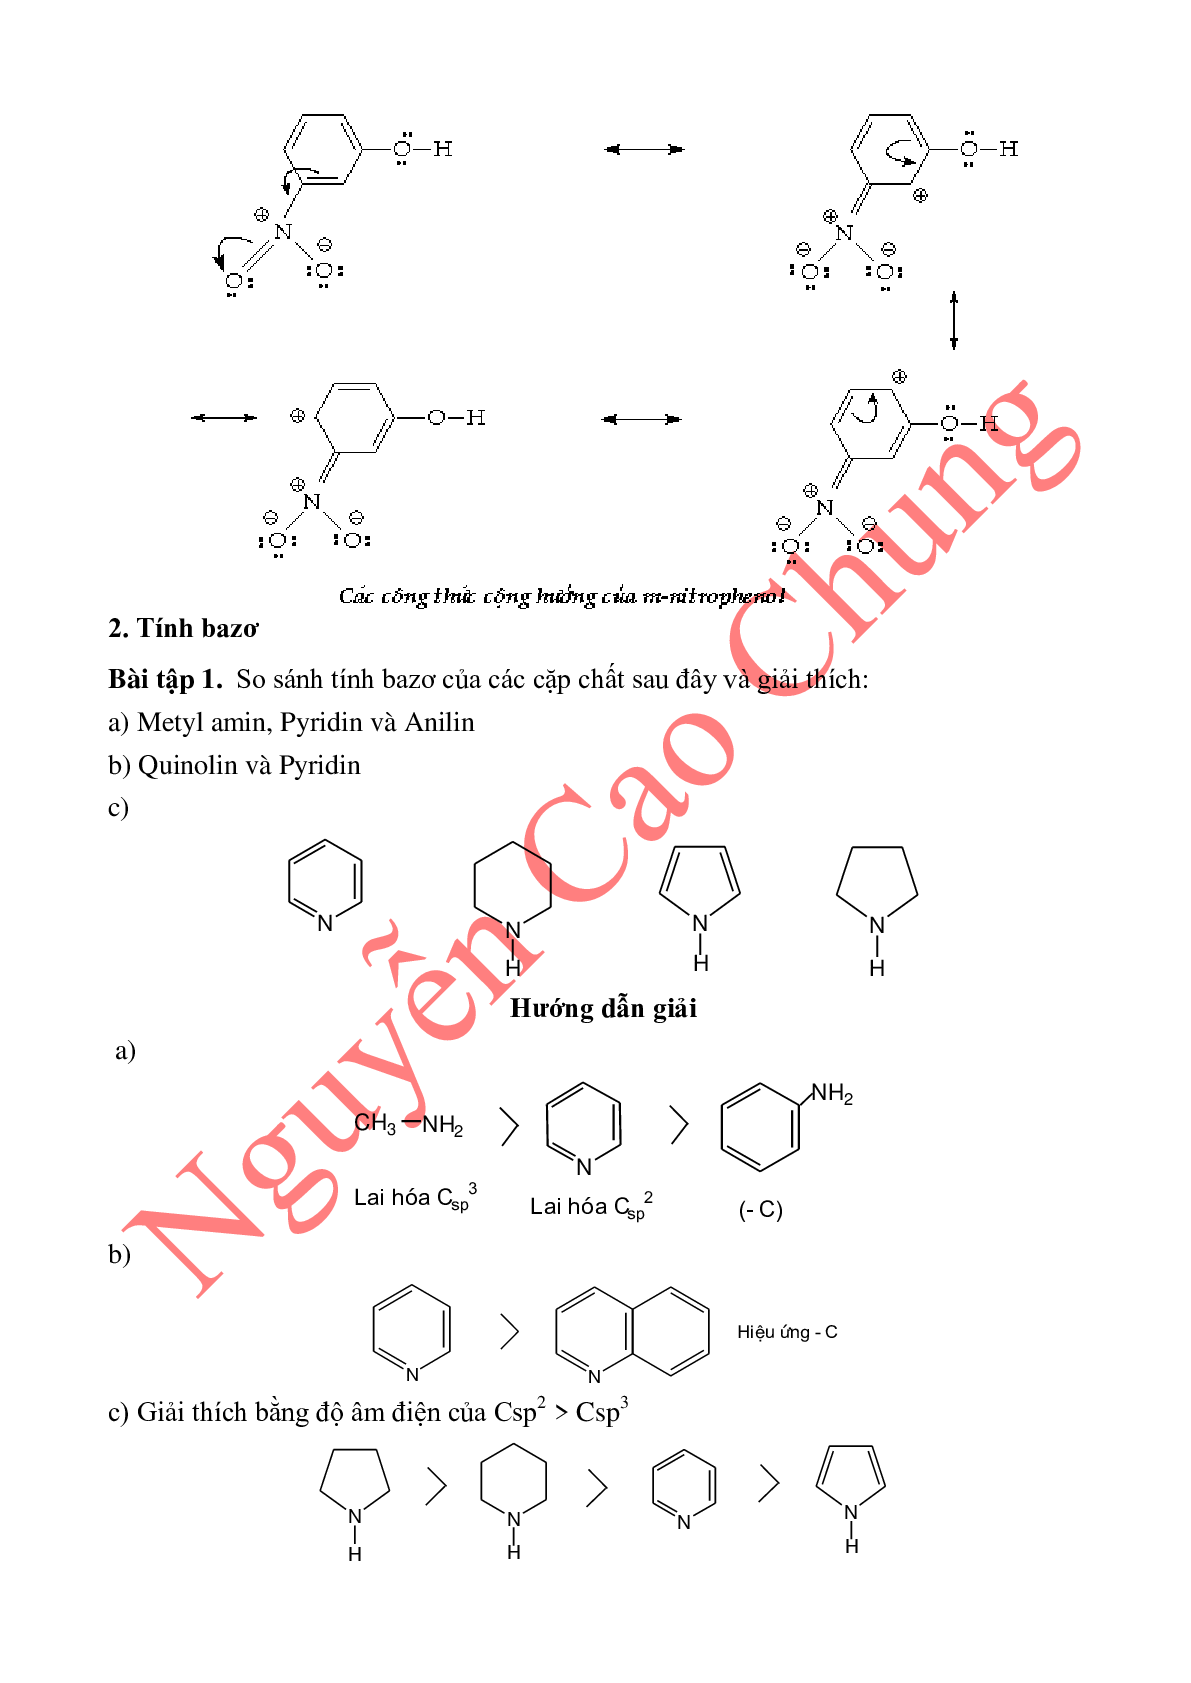 Lý thuyết, bài tập về so sánh tính axit-bazo của các hợp chất hữu cơ (trang 9)